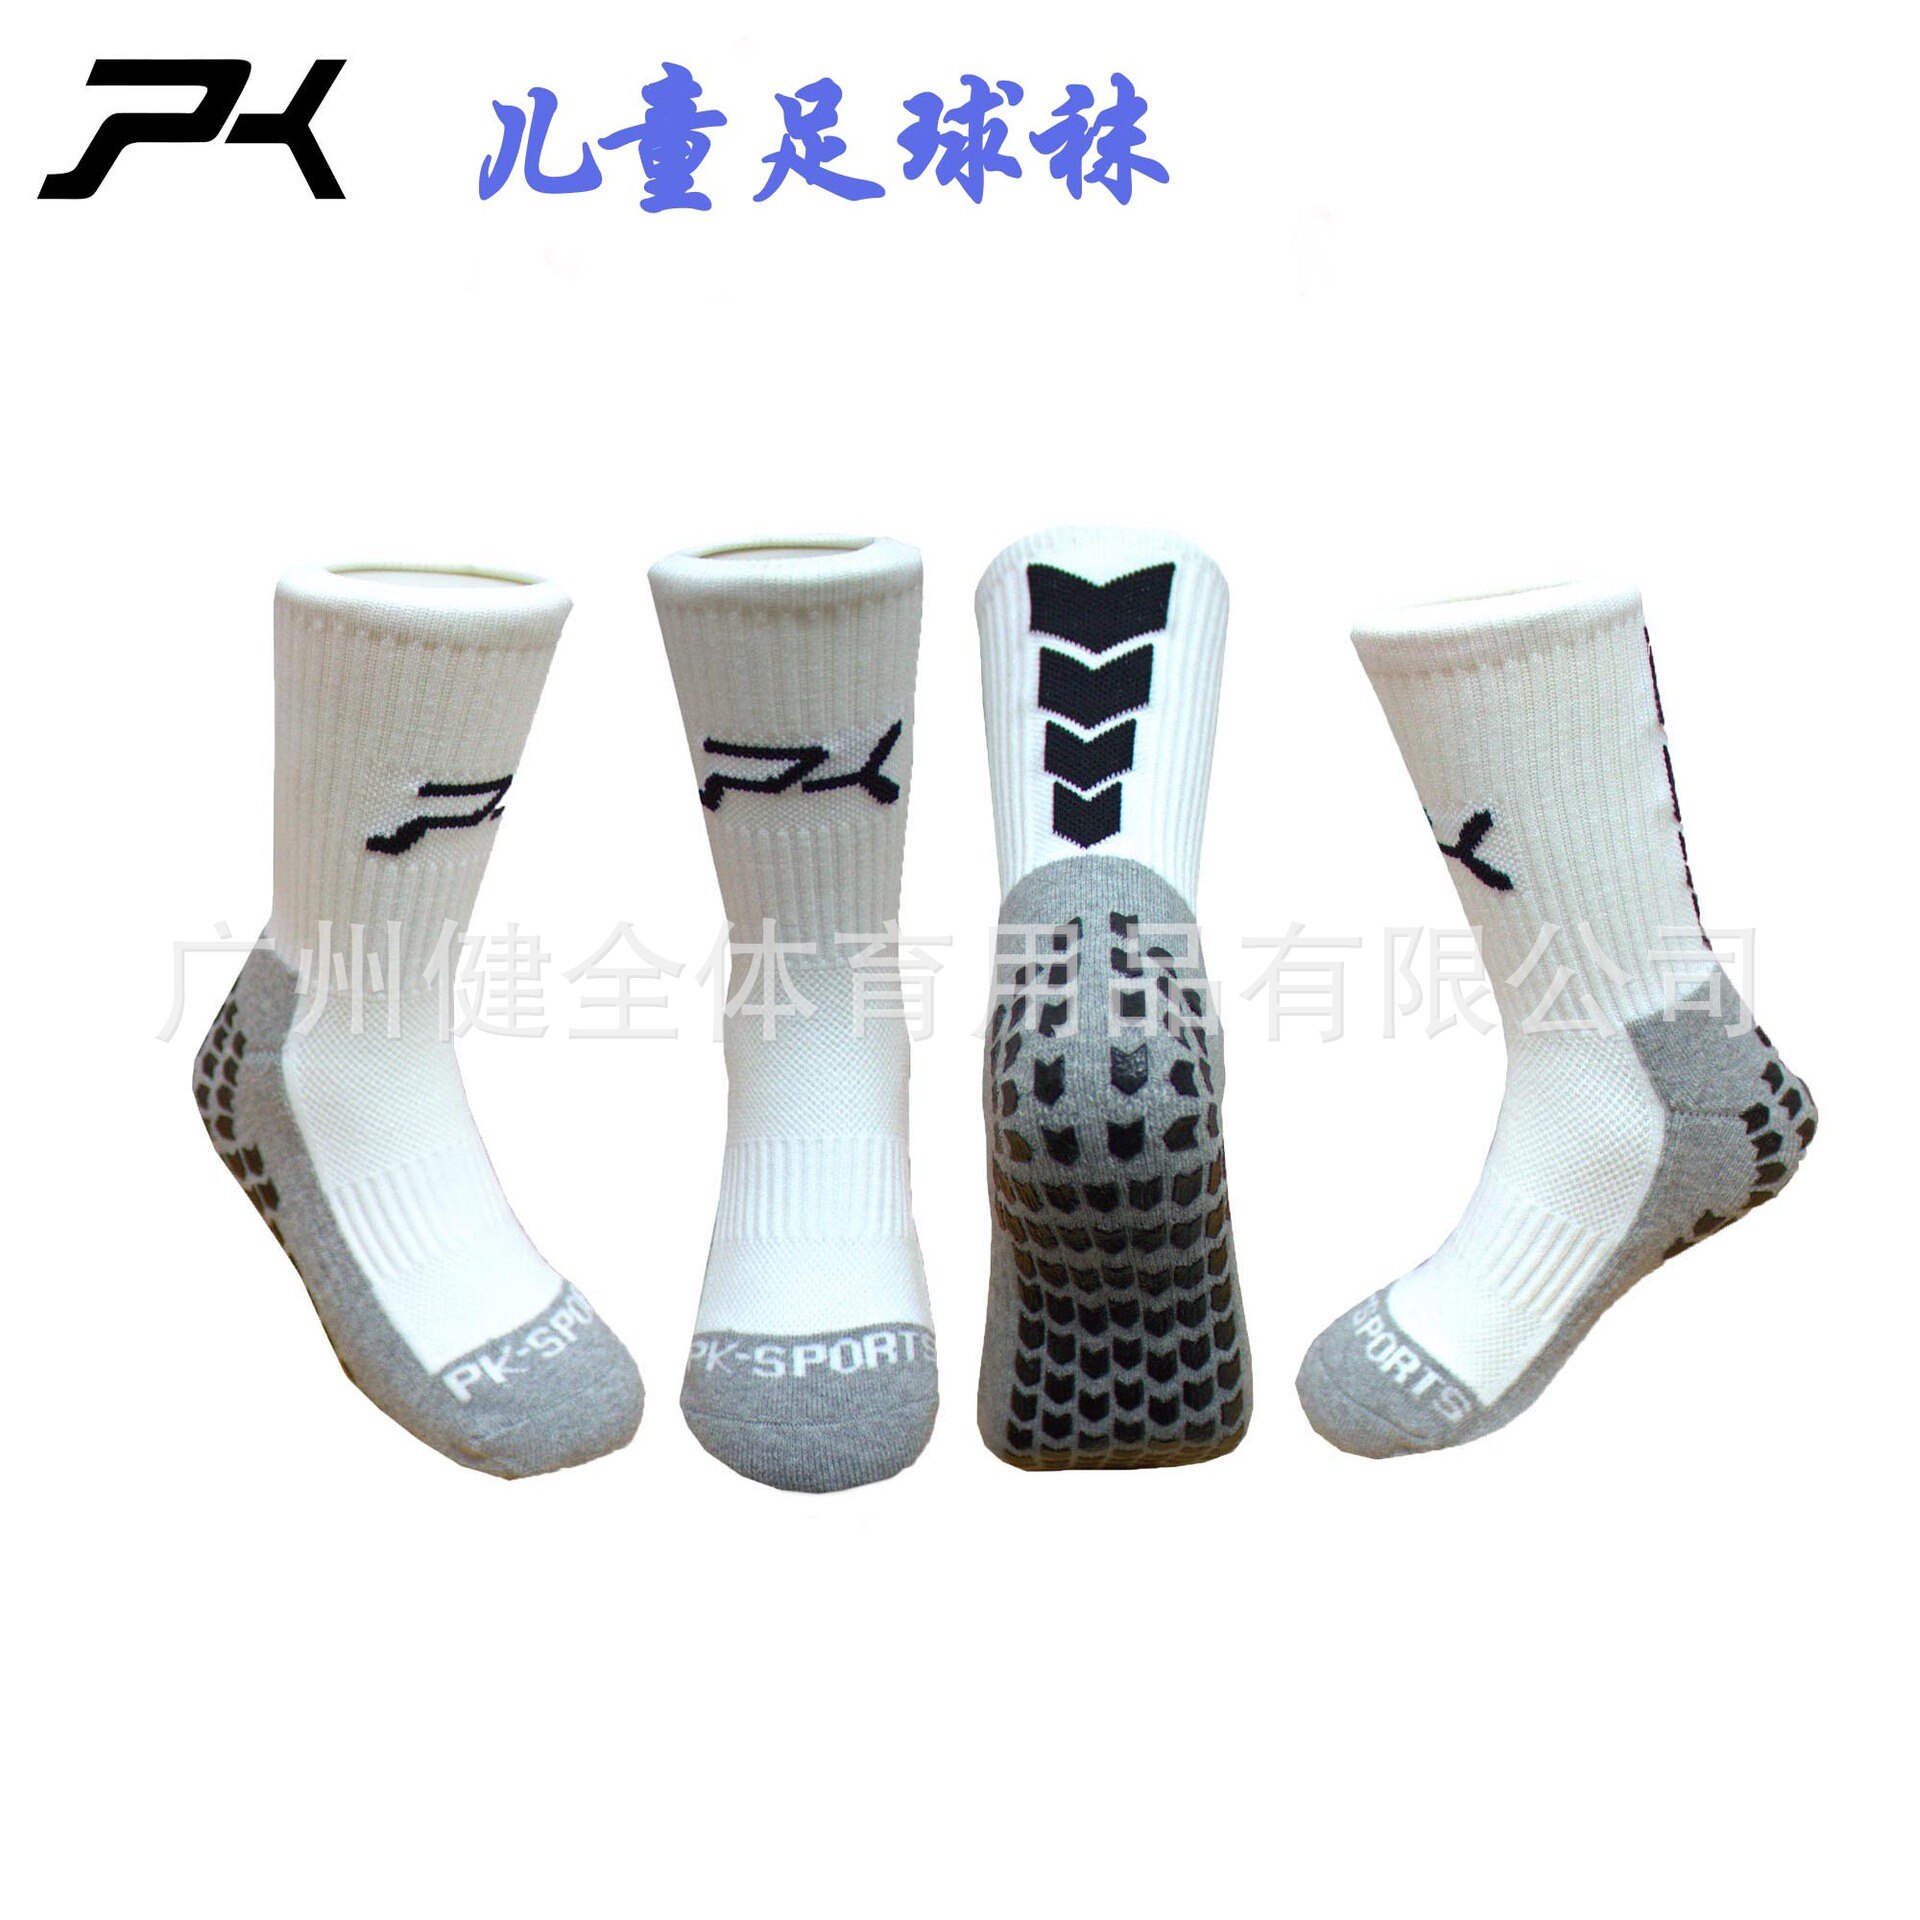 Unisex børn nylon materiale pile mønster anti slip fodbold sokker børns skøjter sokker fodbold sokker: Hvid